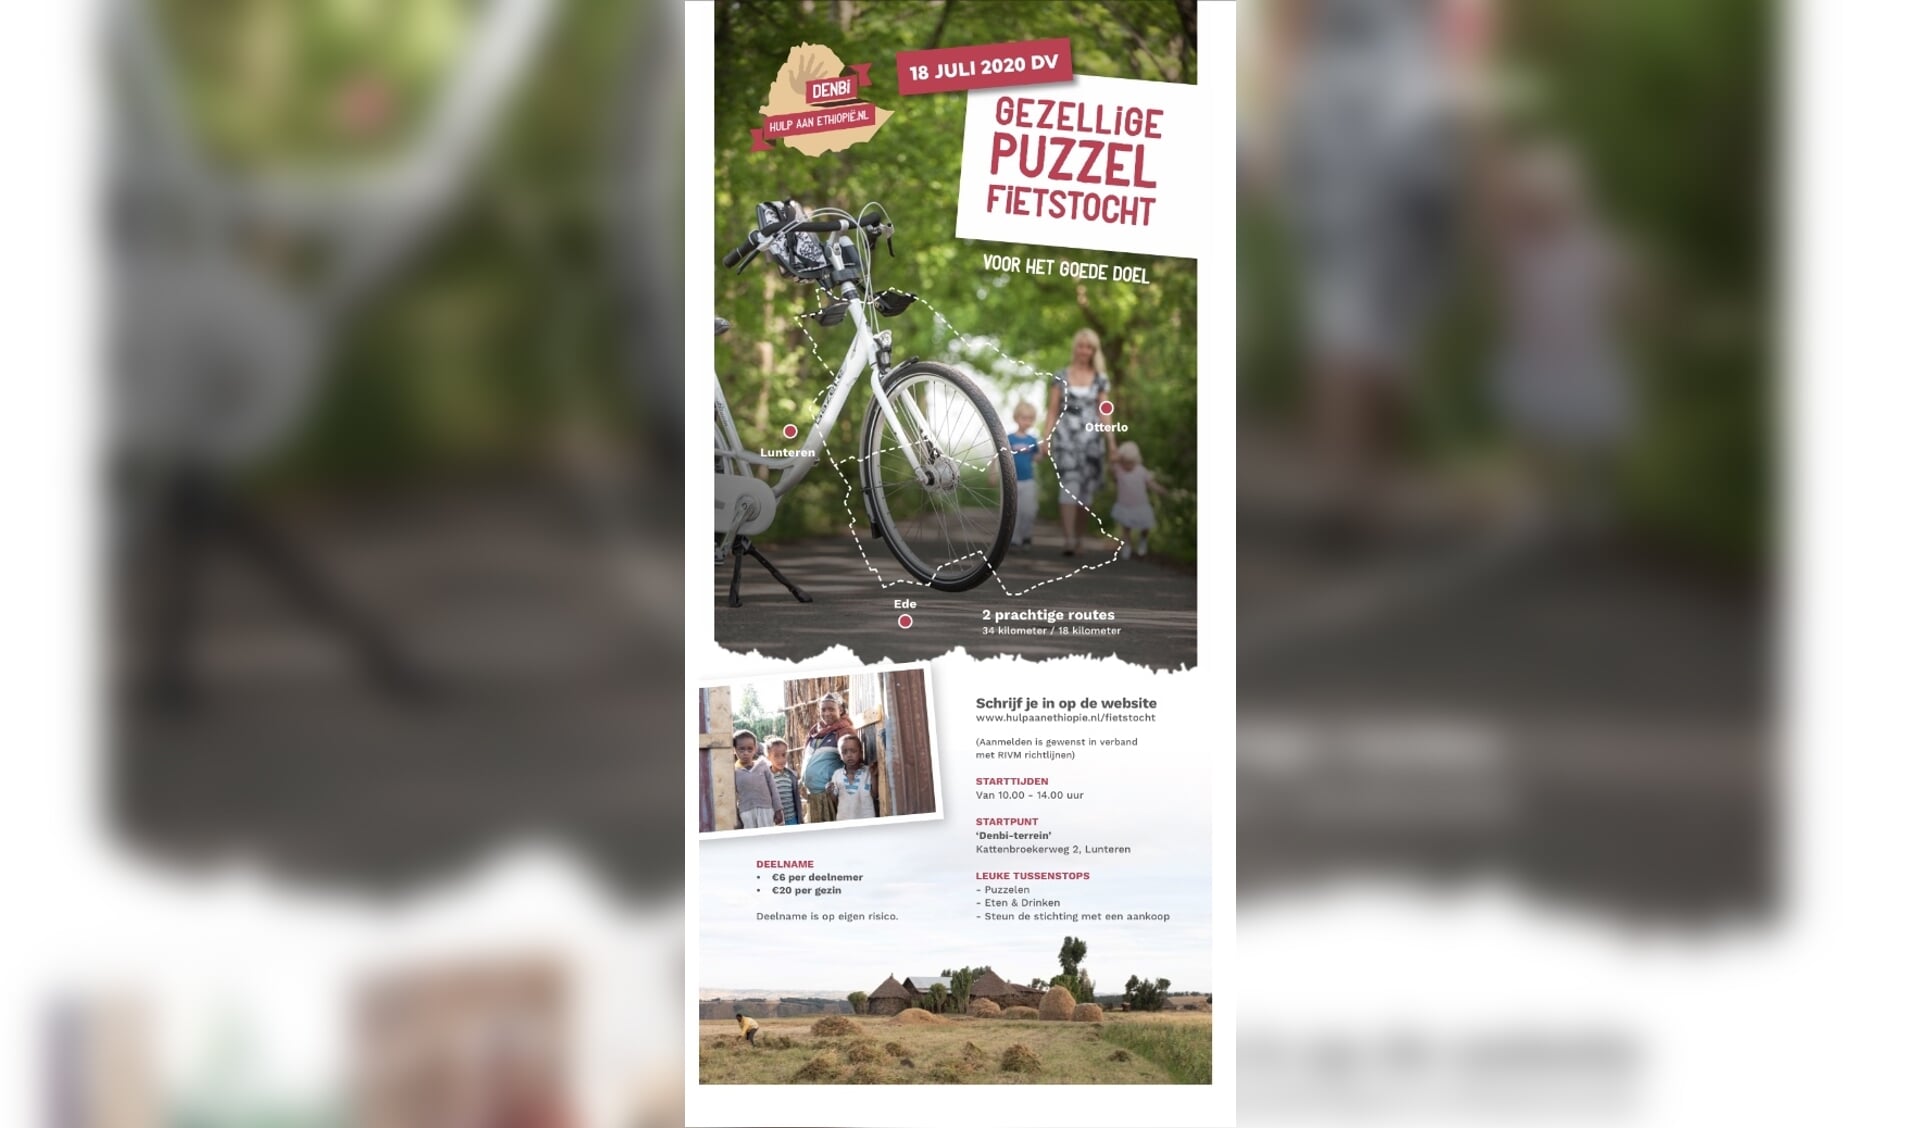 Flyer met info over fietstocht